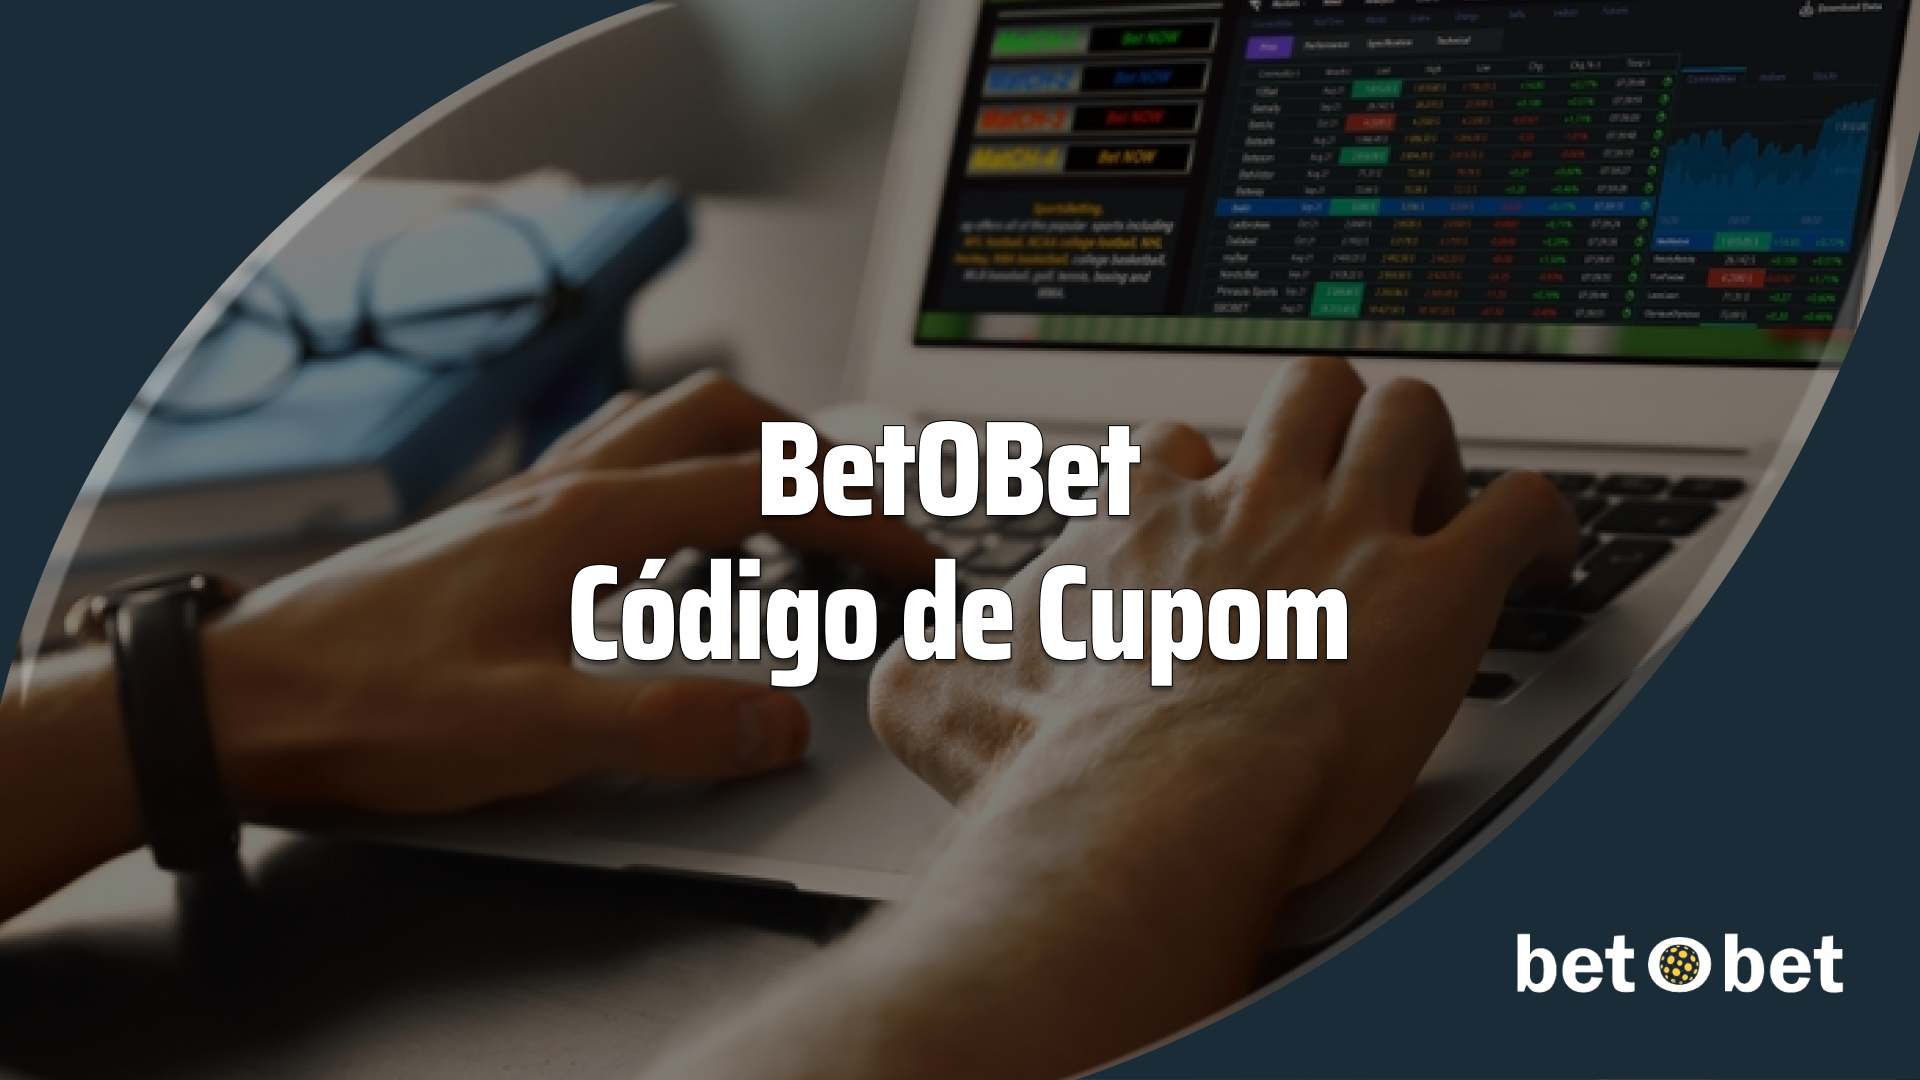 BetOBet Cdigo de Cupom: Bnus at R$500 + Aposta Grtis